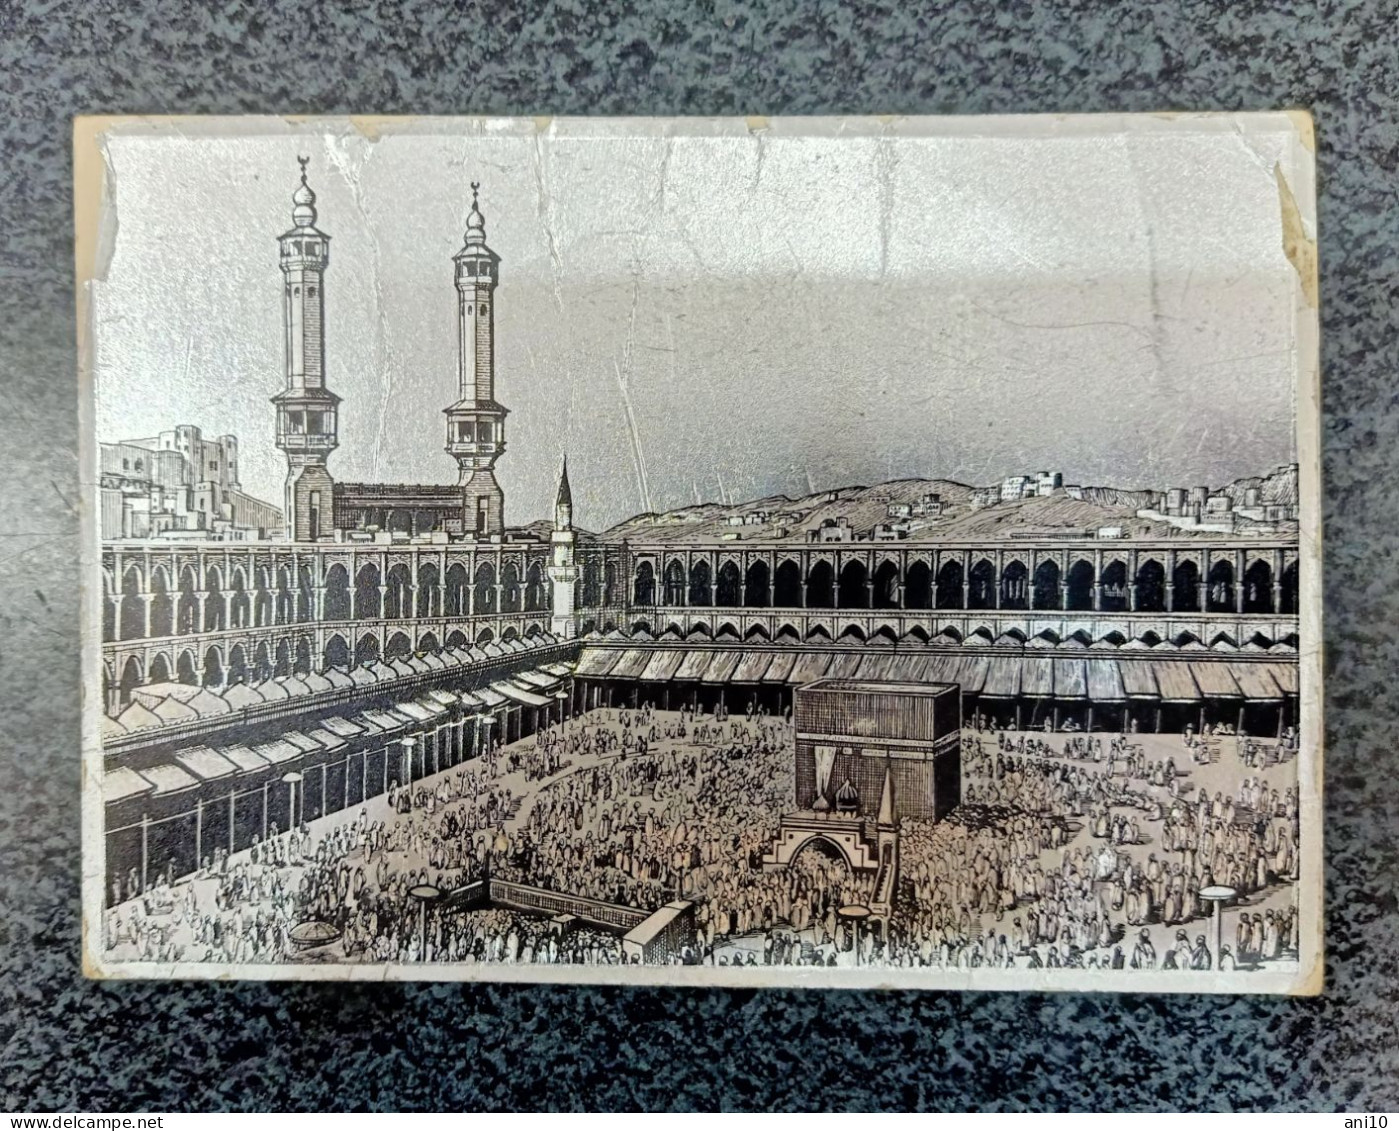 Mecca Saudi Arabia - Saudi-Arabien